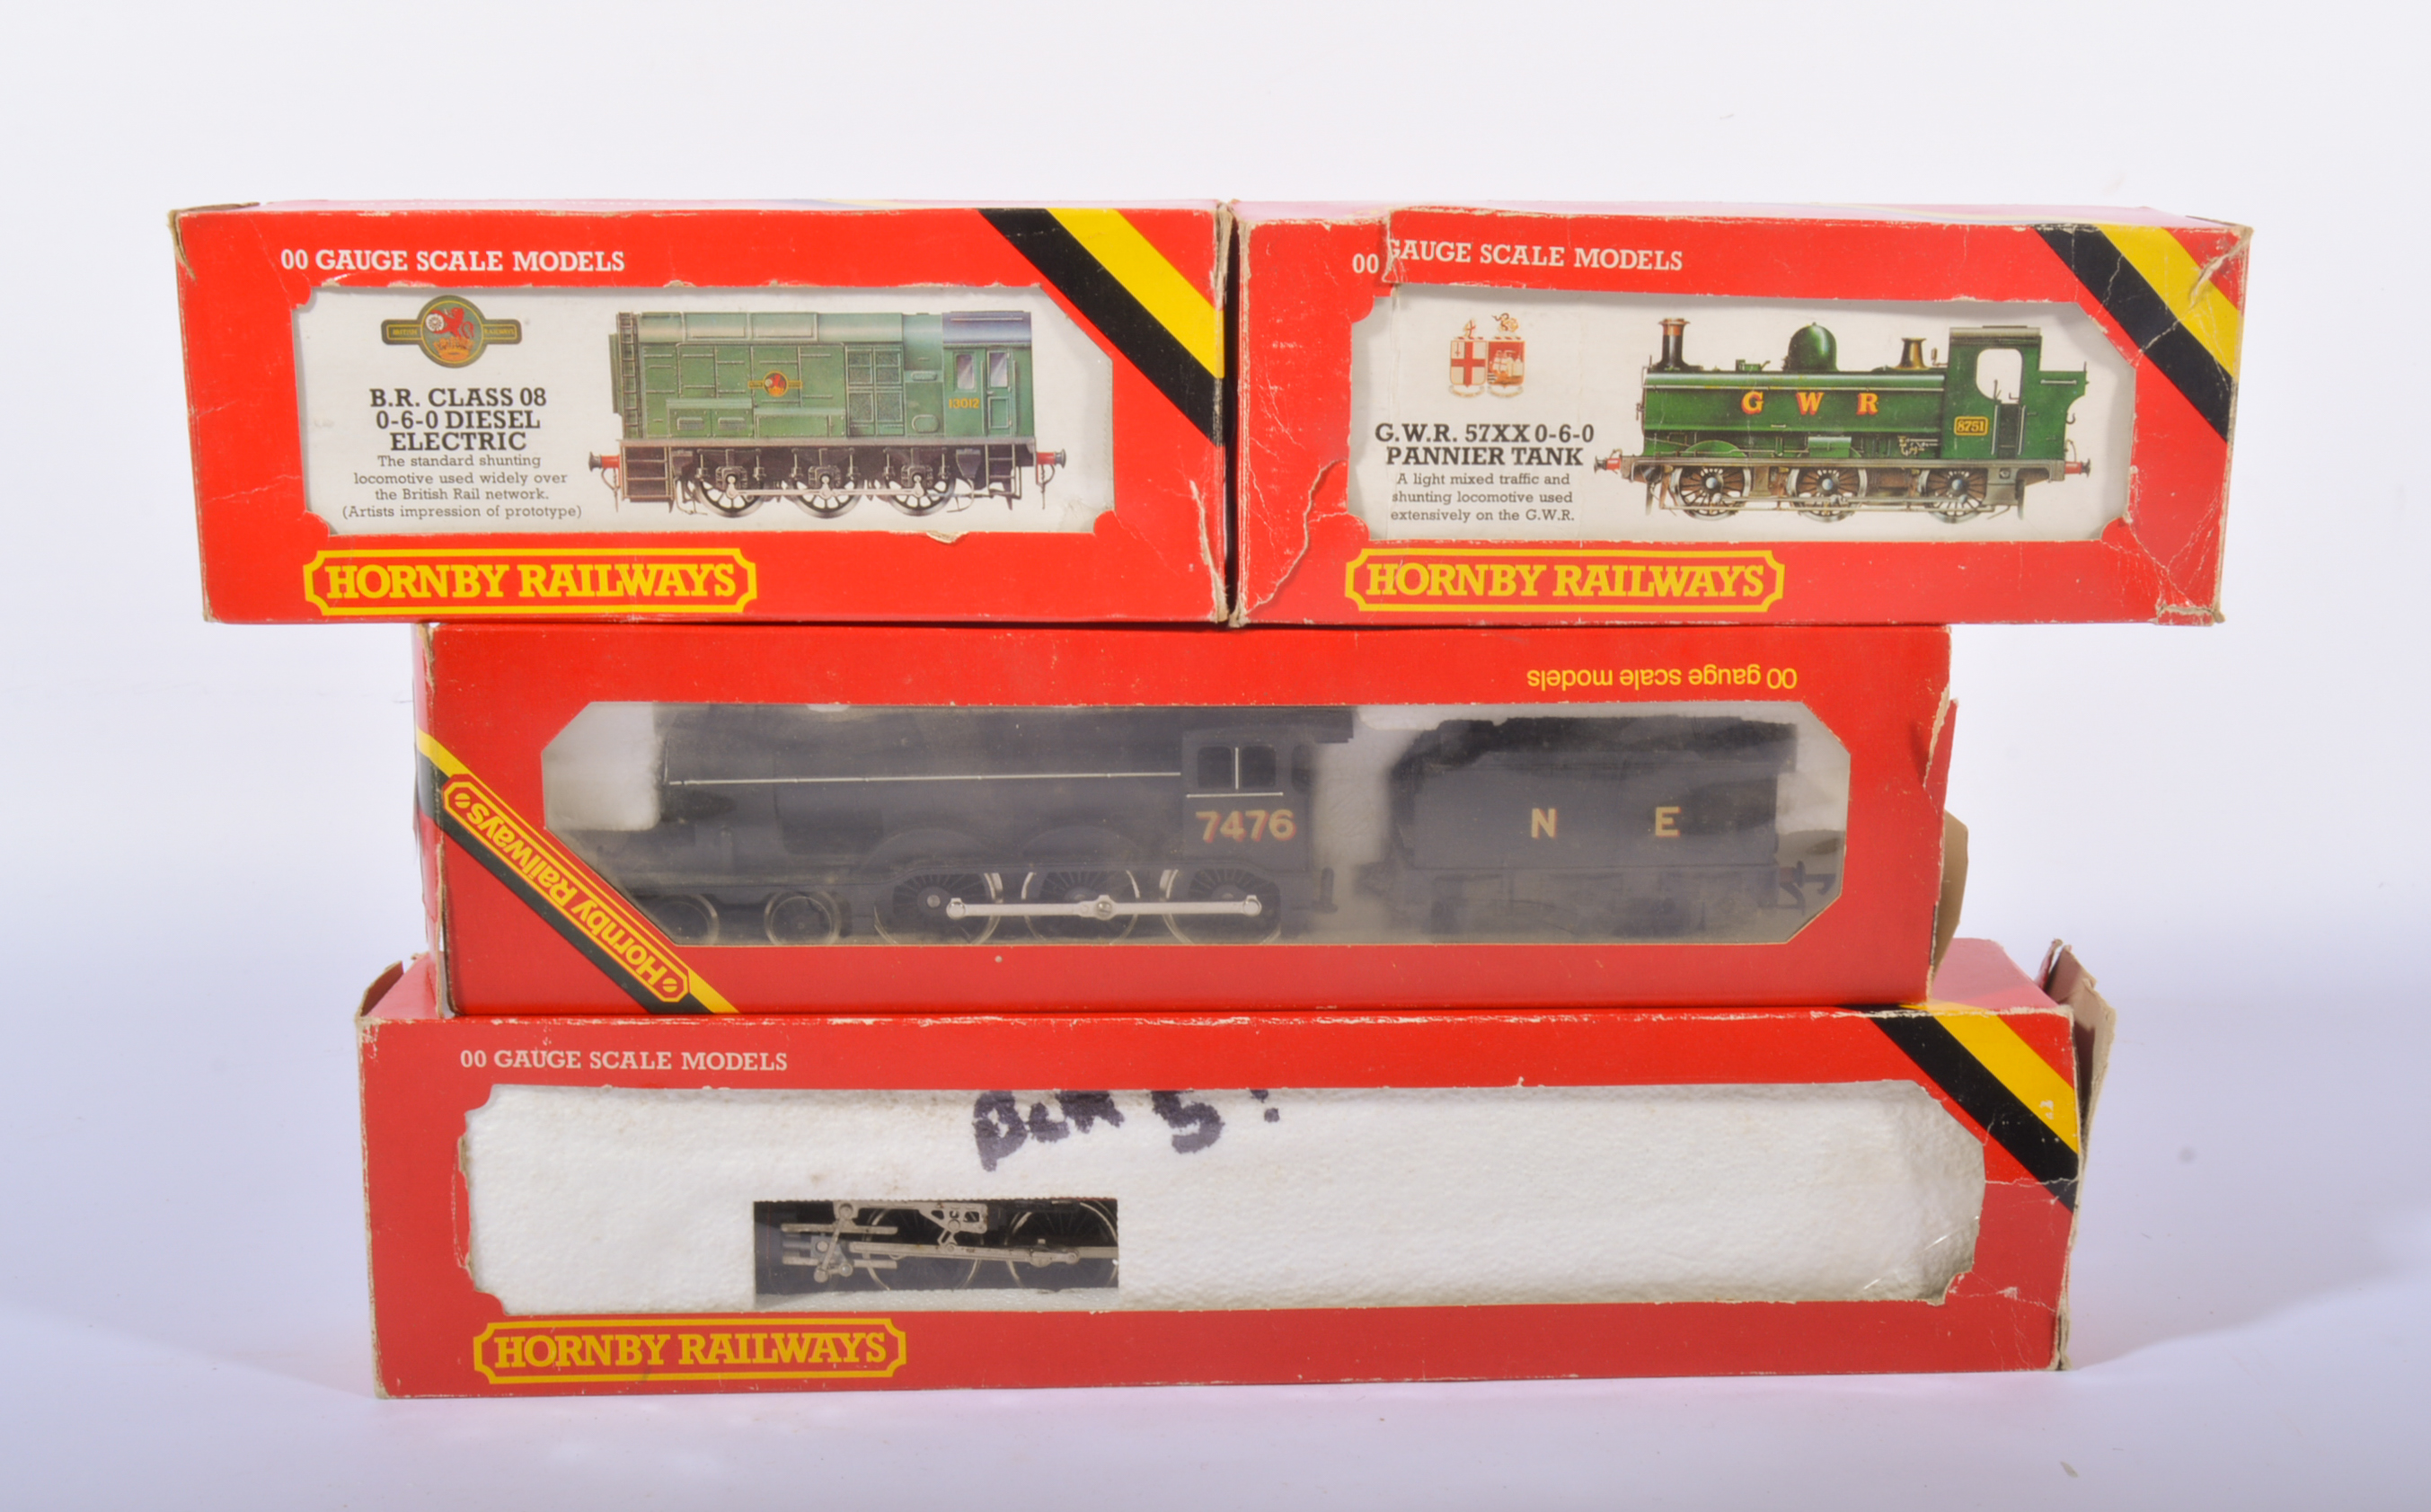 00 gauge railway locomotives by Hornby, R156 Class 08 Diesel Shunter, R041 GWR loco tank,